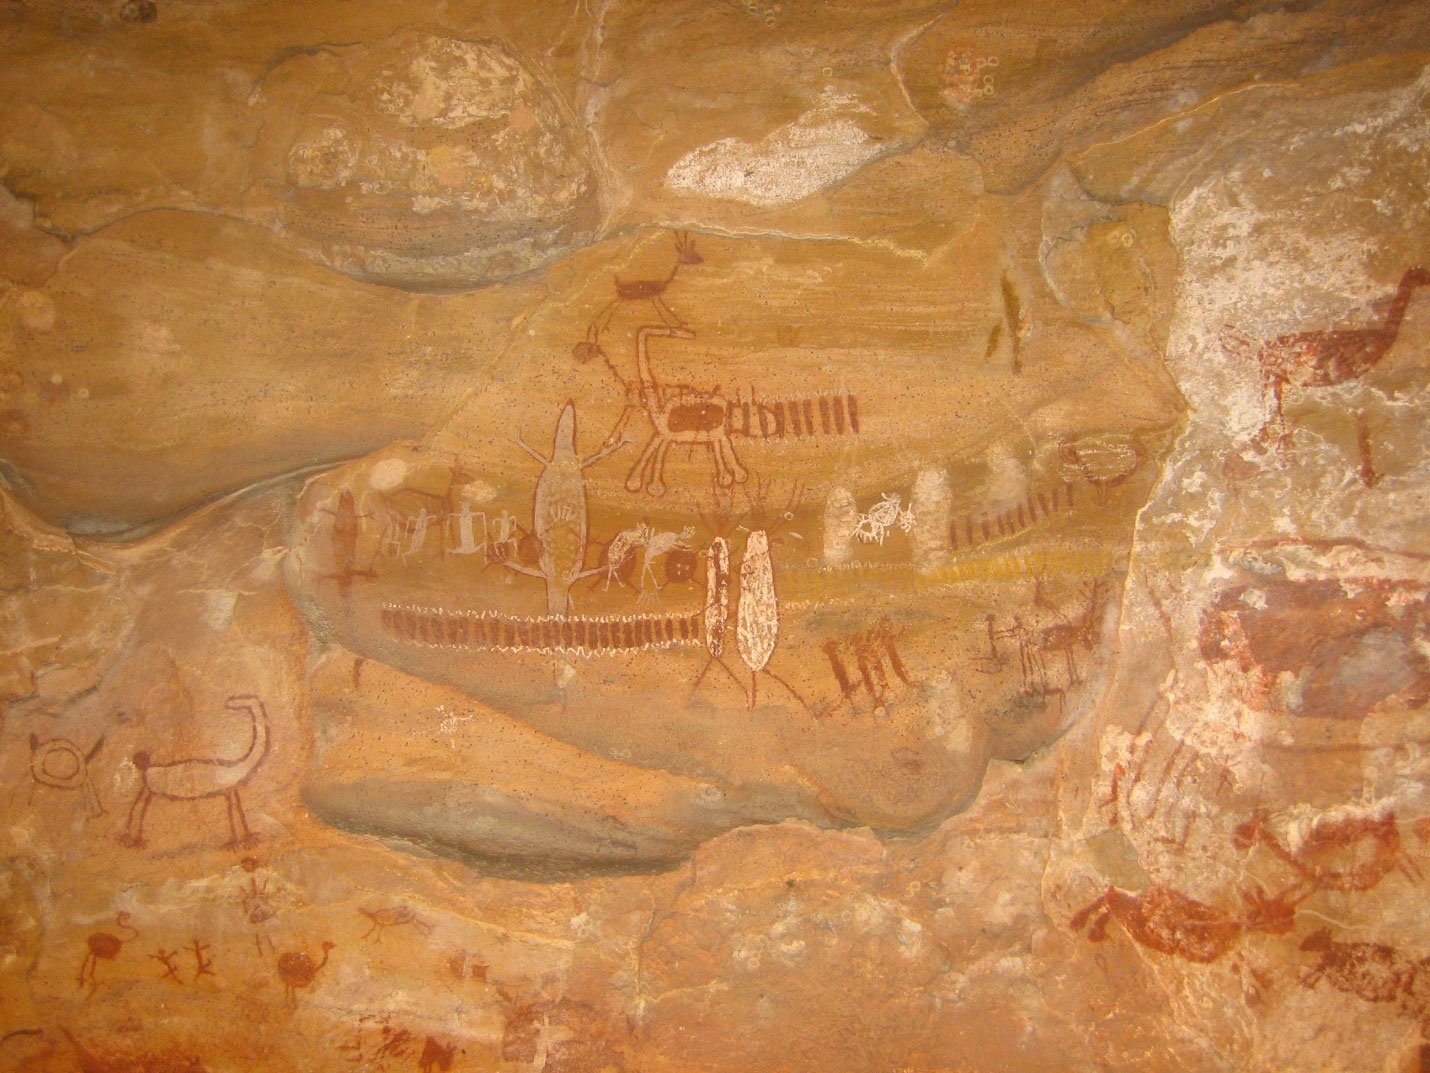 Photographie d'une peinture rupestre localisée au parc national de Serra da Capivara au Brésil. Elle représente de nombreux animaux tels que les reptiles.